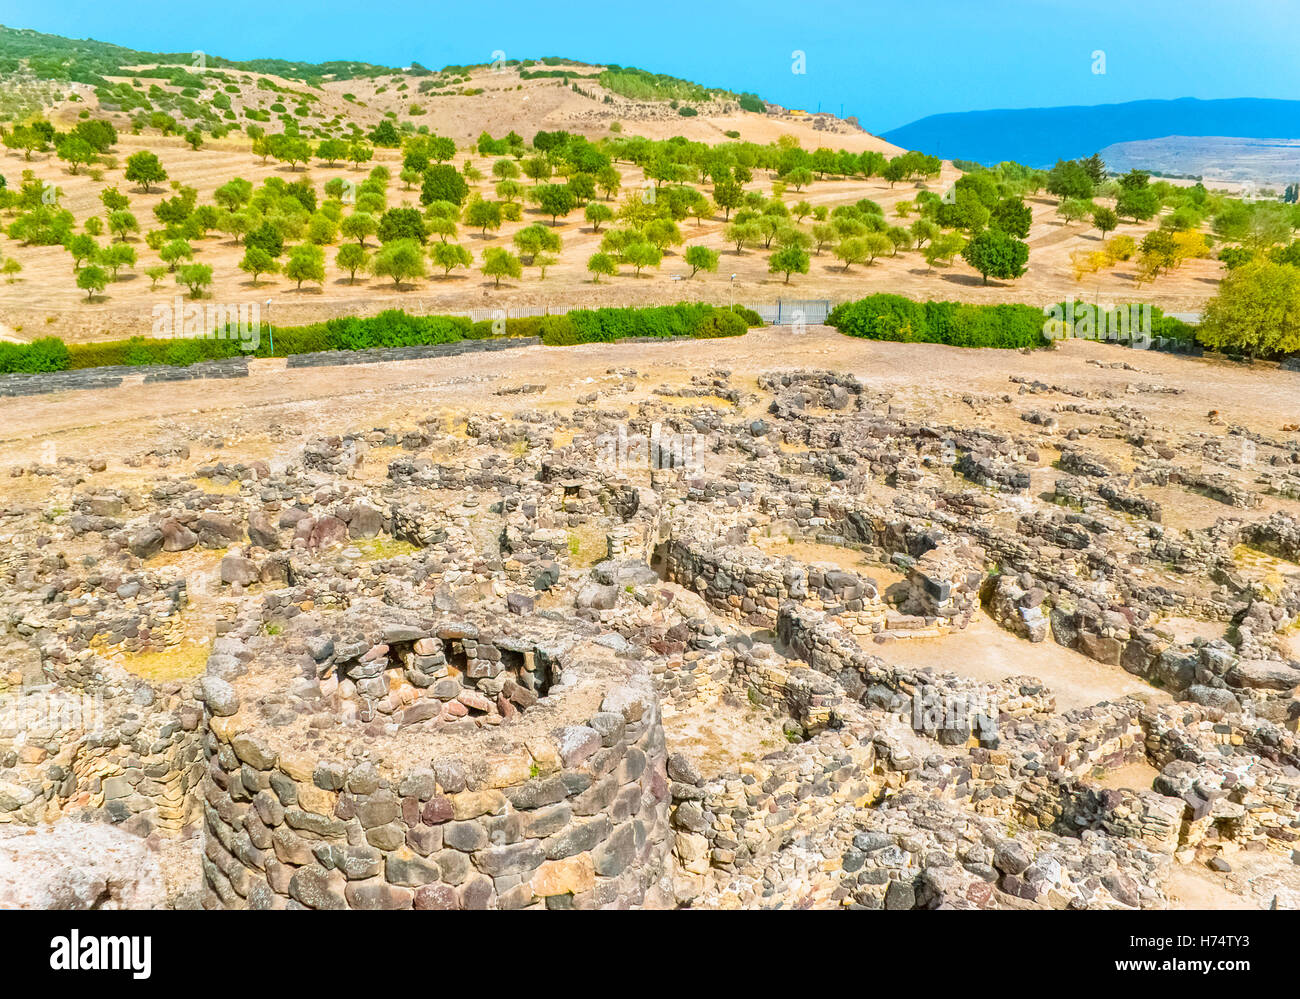 La fondazione del borgo antico è conservato solo una parte di esso, Sardegna, Italia. Foto Stock